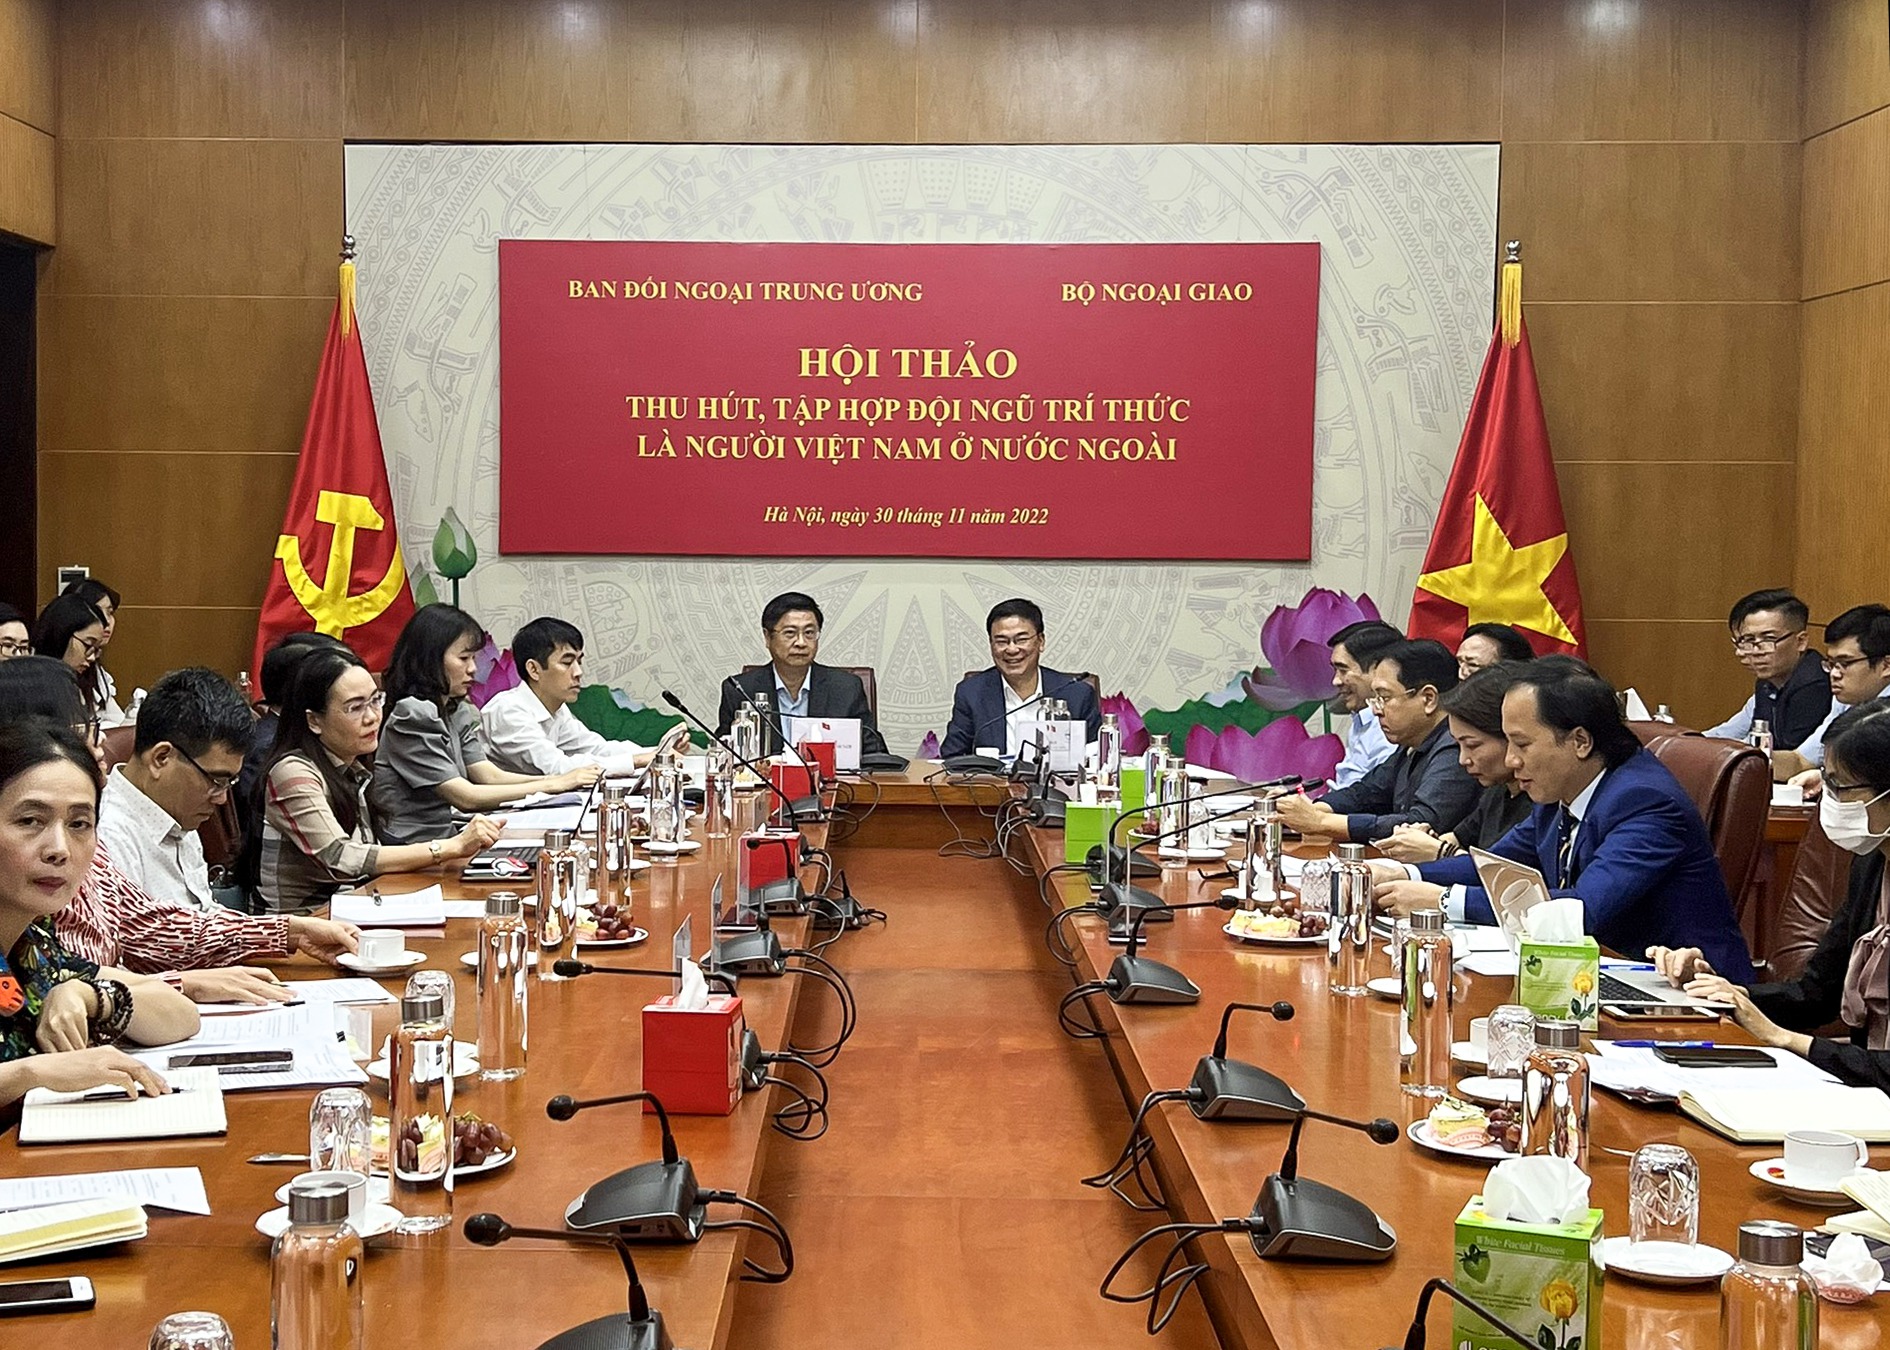 Tiếp tục đẩy mạnh vai trò của văn hóa trong công tác thu hút, tập hợp đội ngũ trí thức là người Việt Nam ở nước ngoài